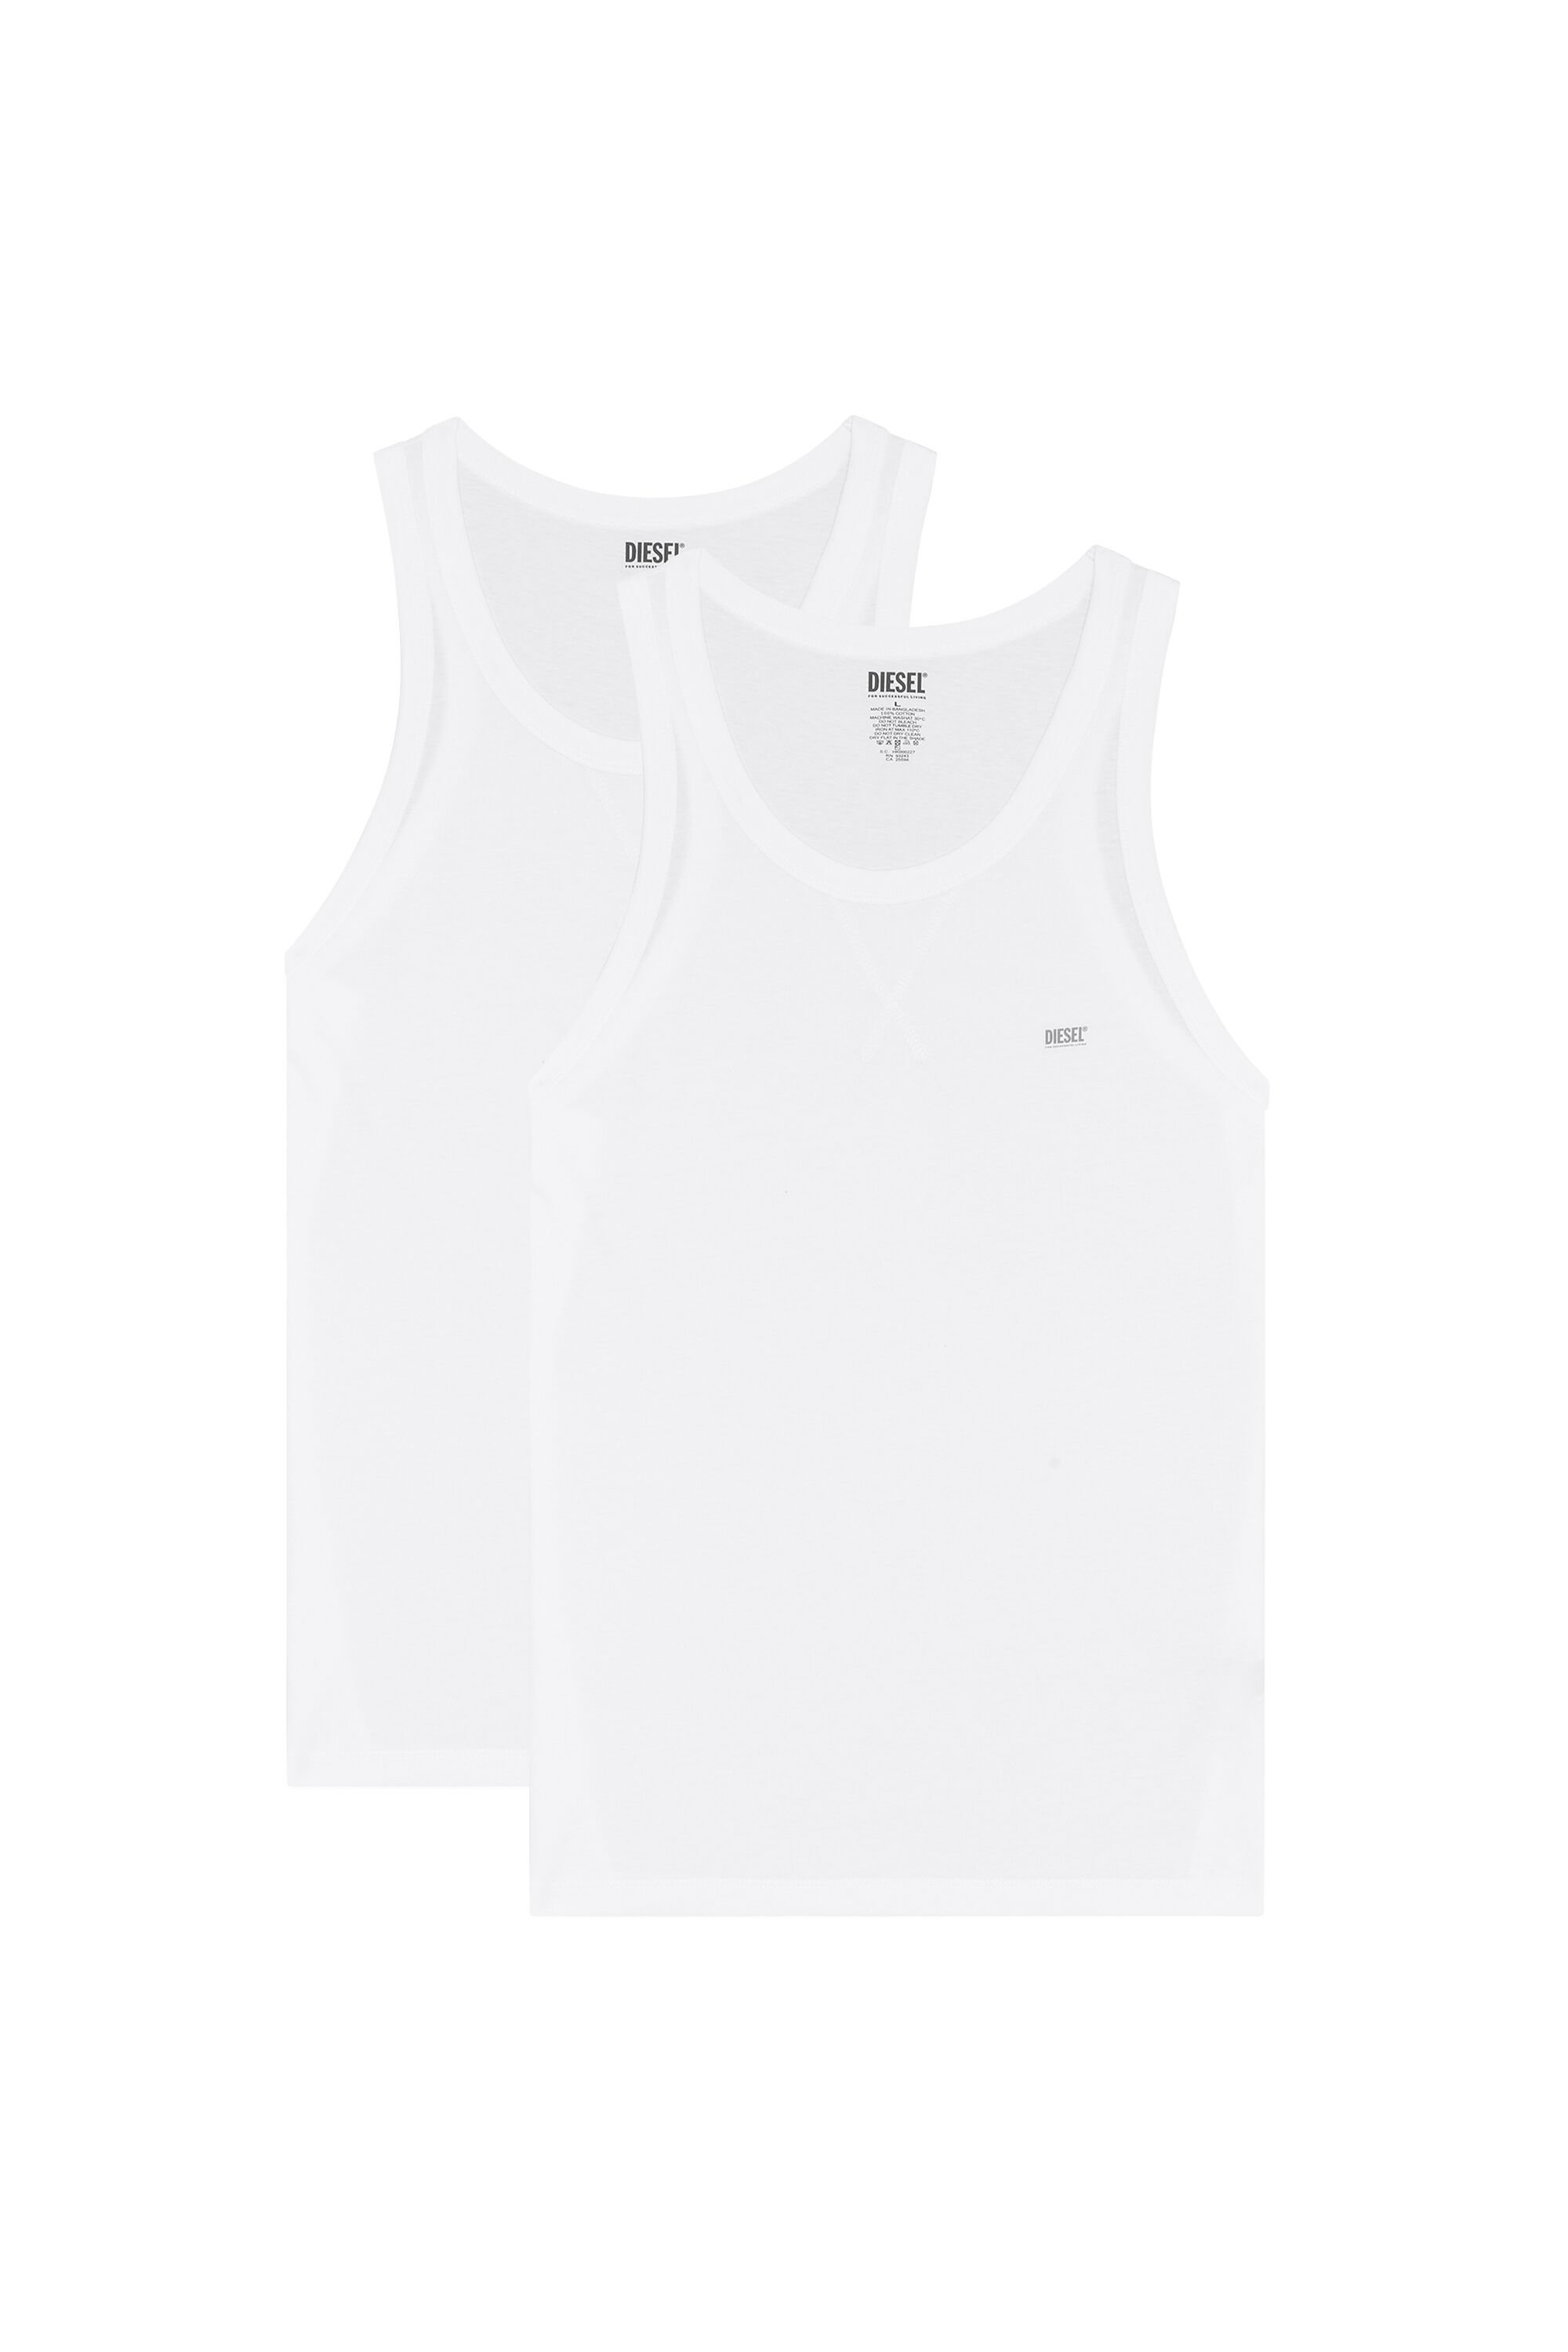 Diesel - UMTK-WALTYTWOPACK, Hombre Paquete de dos camisetas de tirantes de algodón in Blanco - Image 2